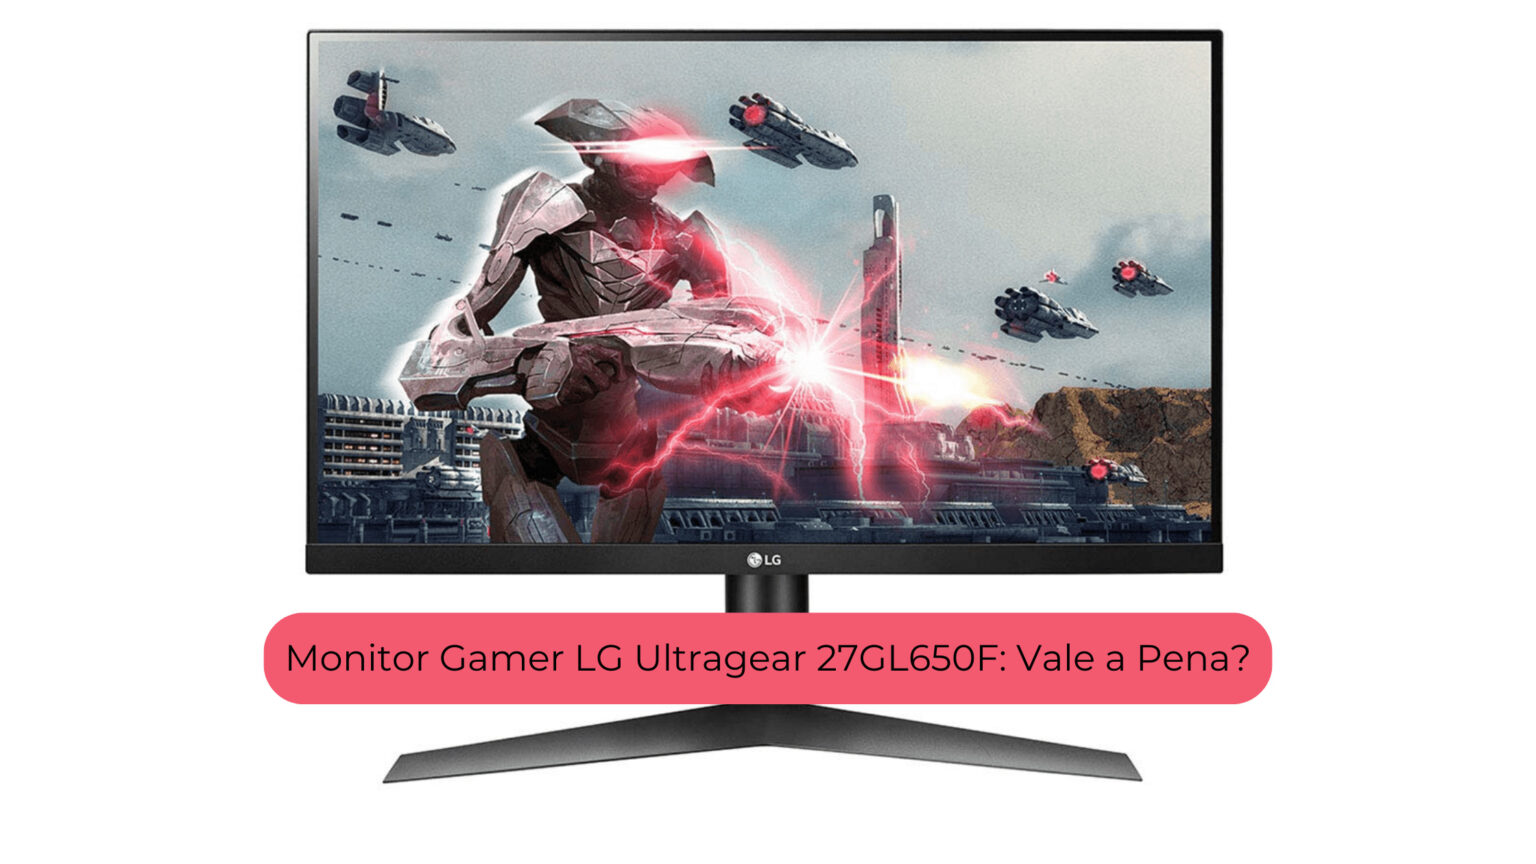 Monitor Gamer LG Ultragear 27GL650F